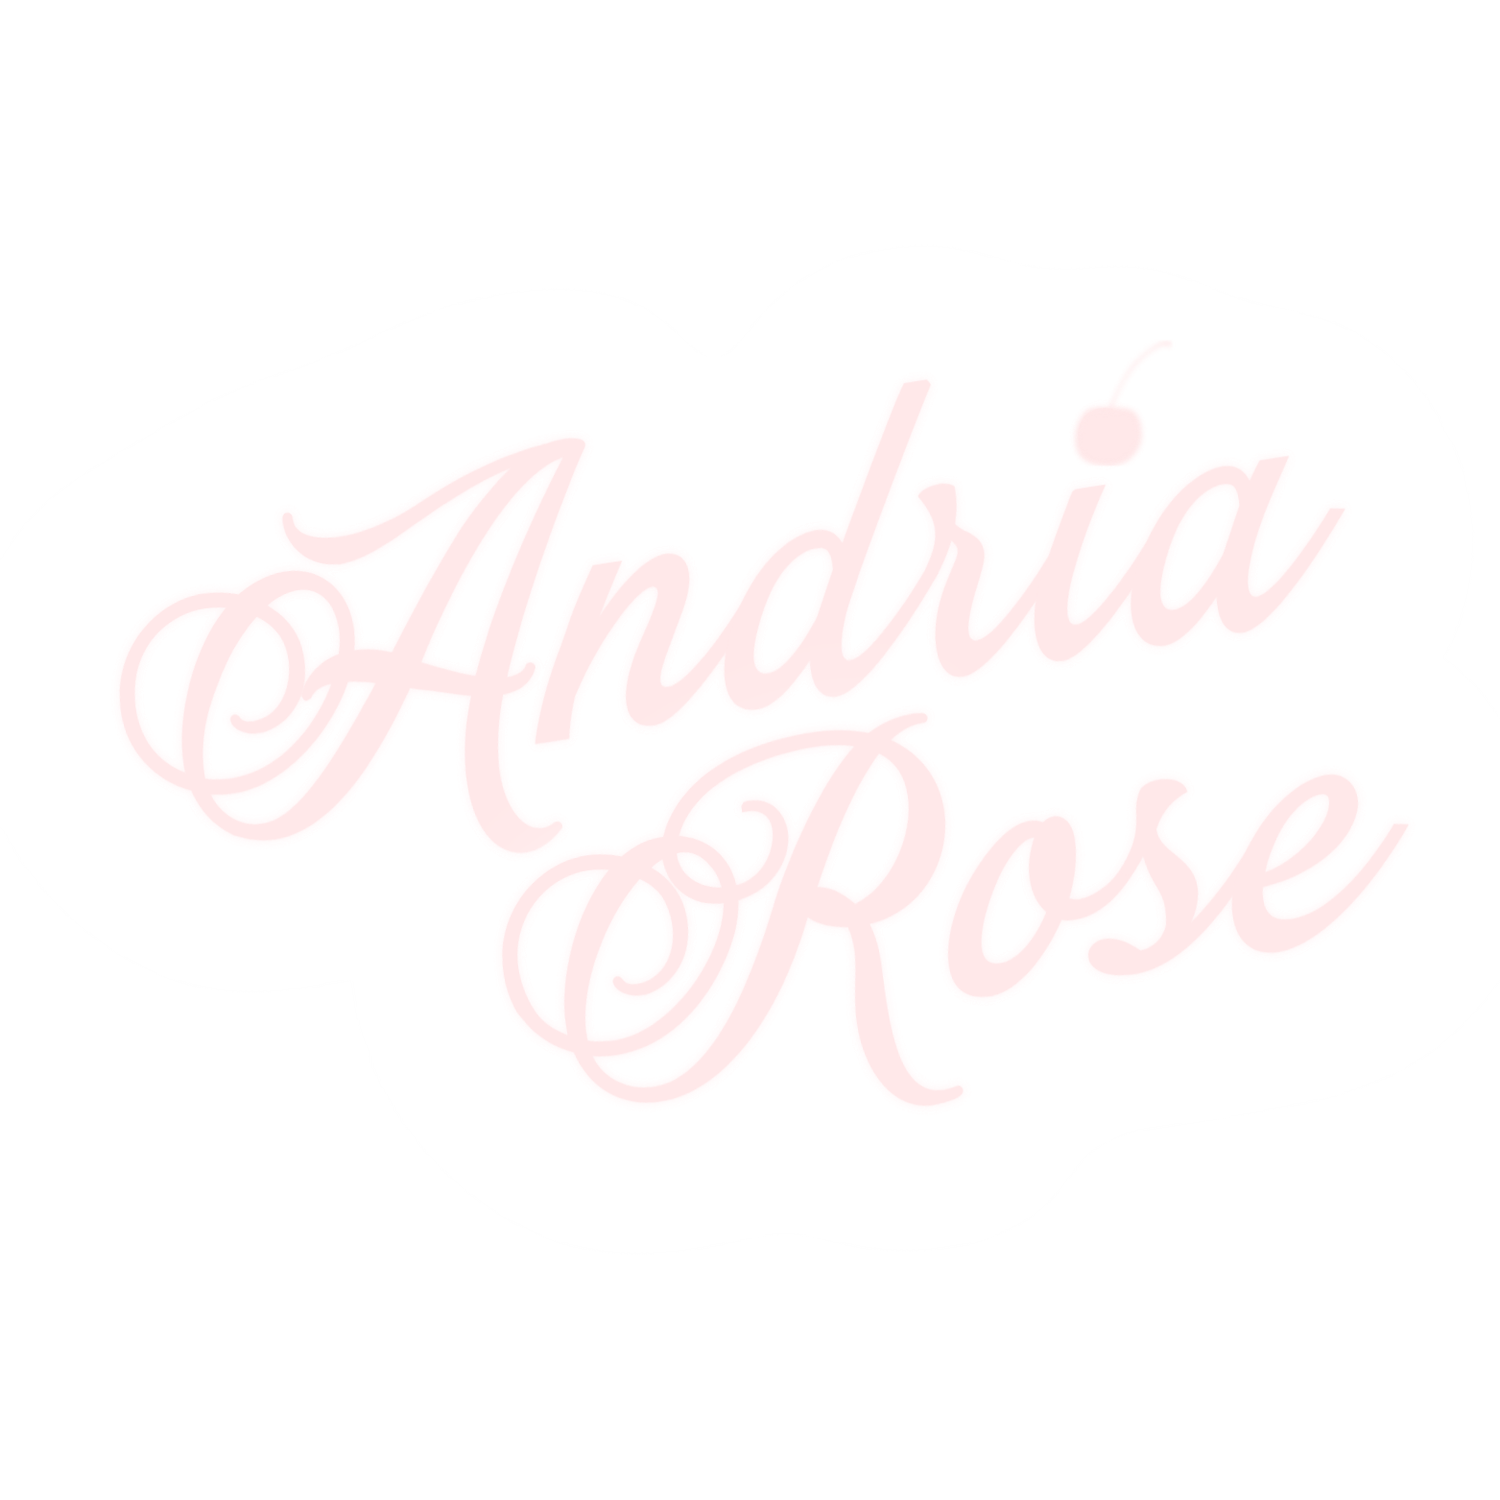 Andria Rose